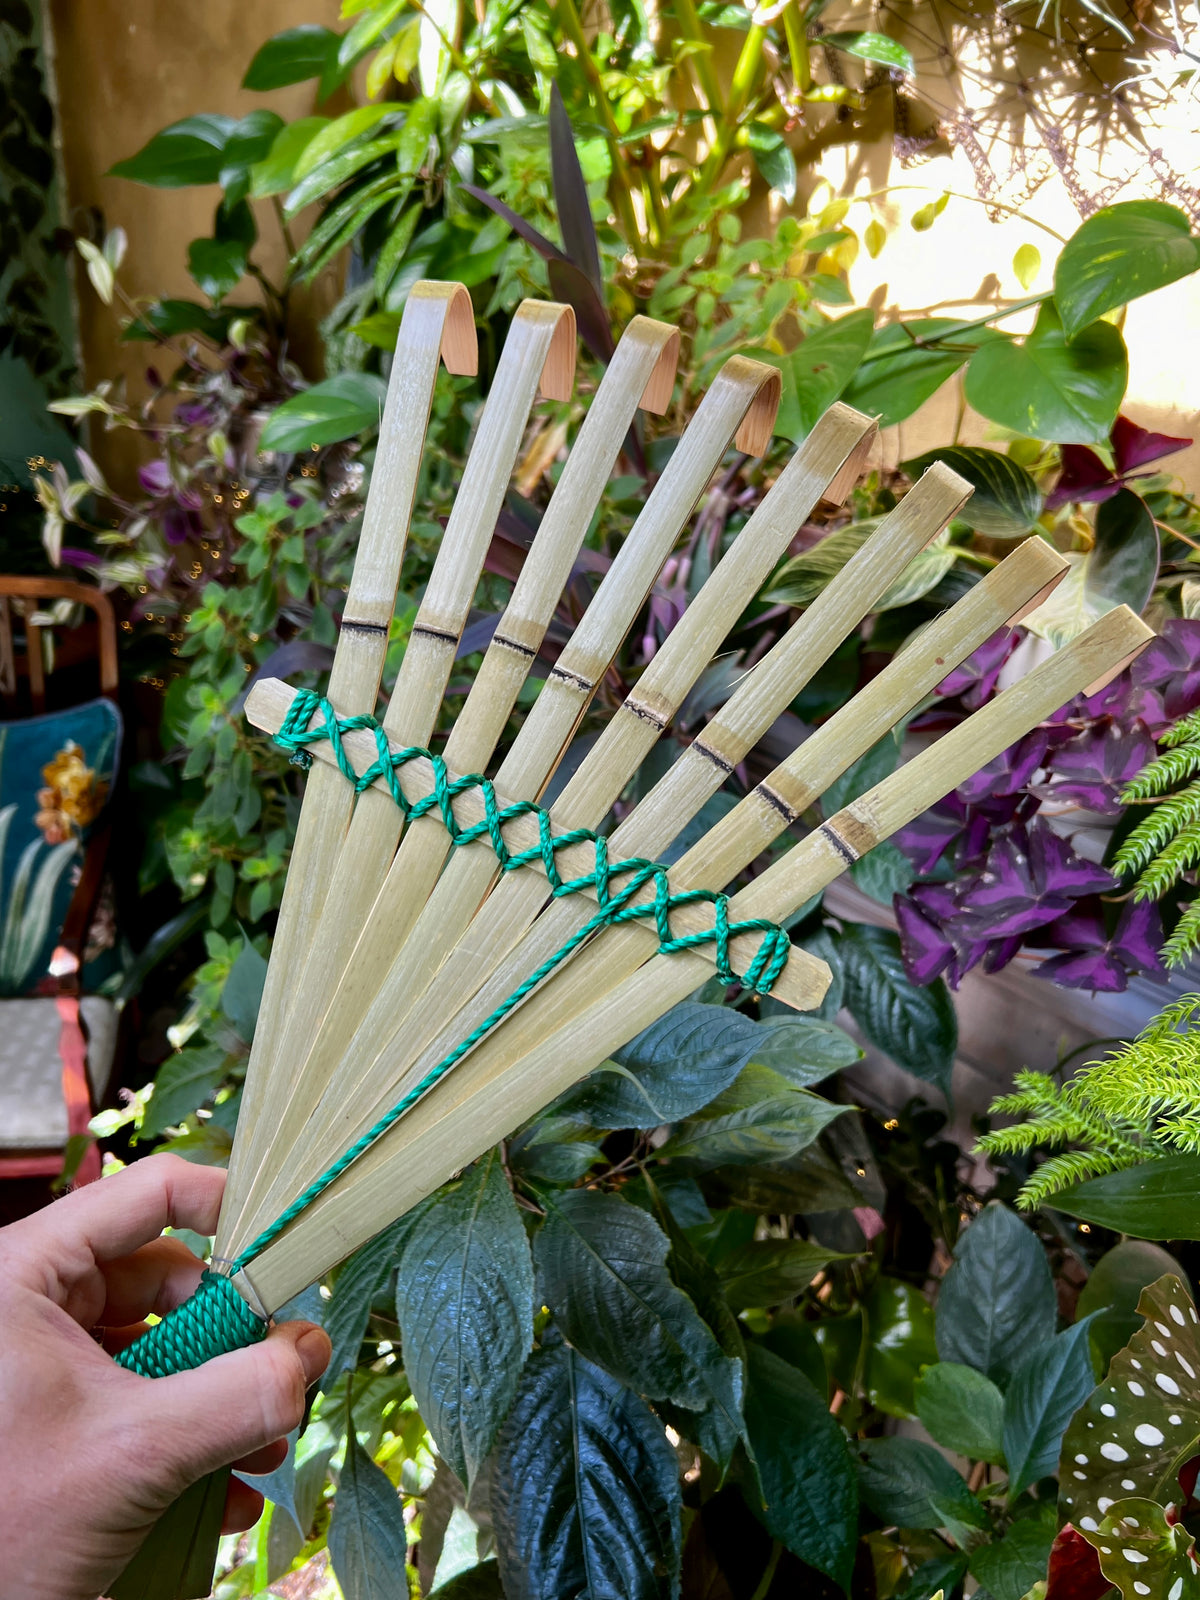 Niwaki Bamboo Hand Rake